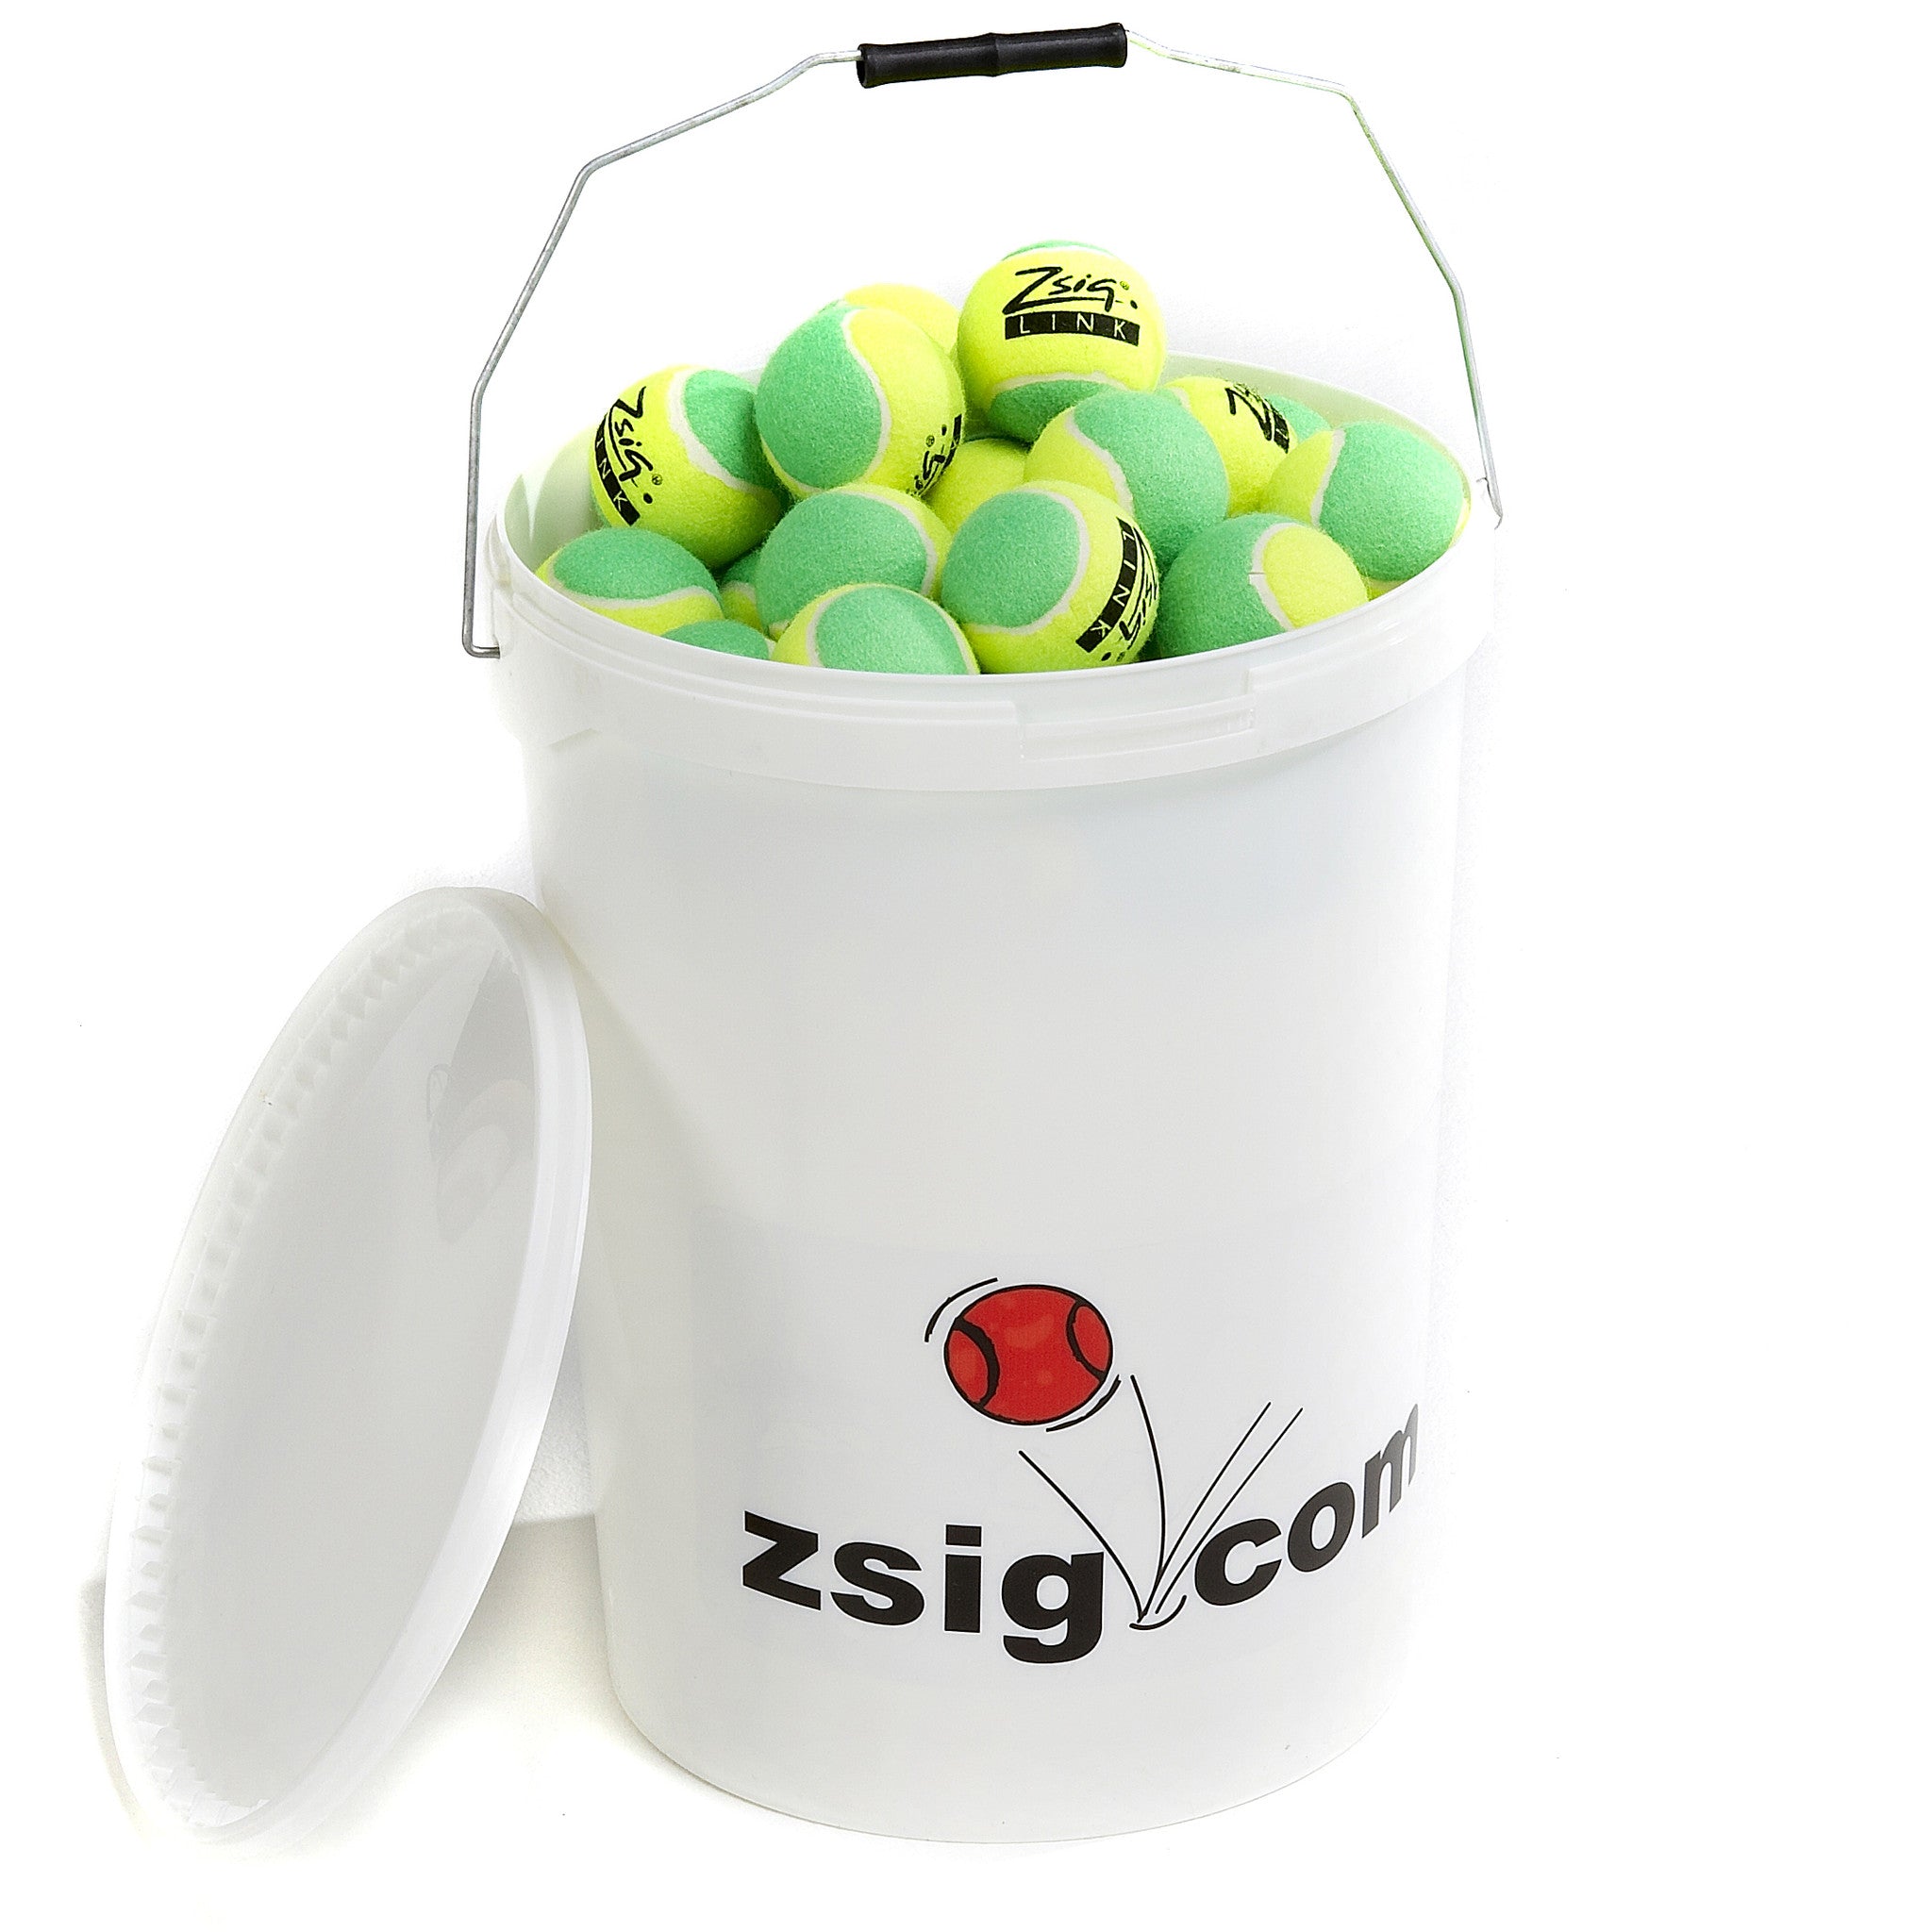 Green Mini Tennis Balls. A bucket of 8 dozen Zsig Link Green Balls.